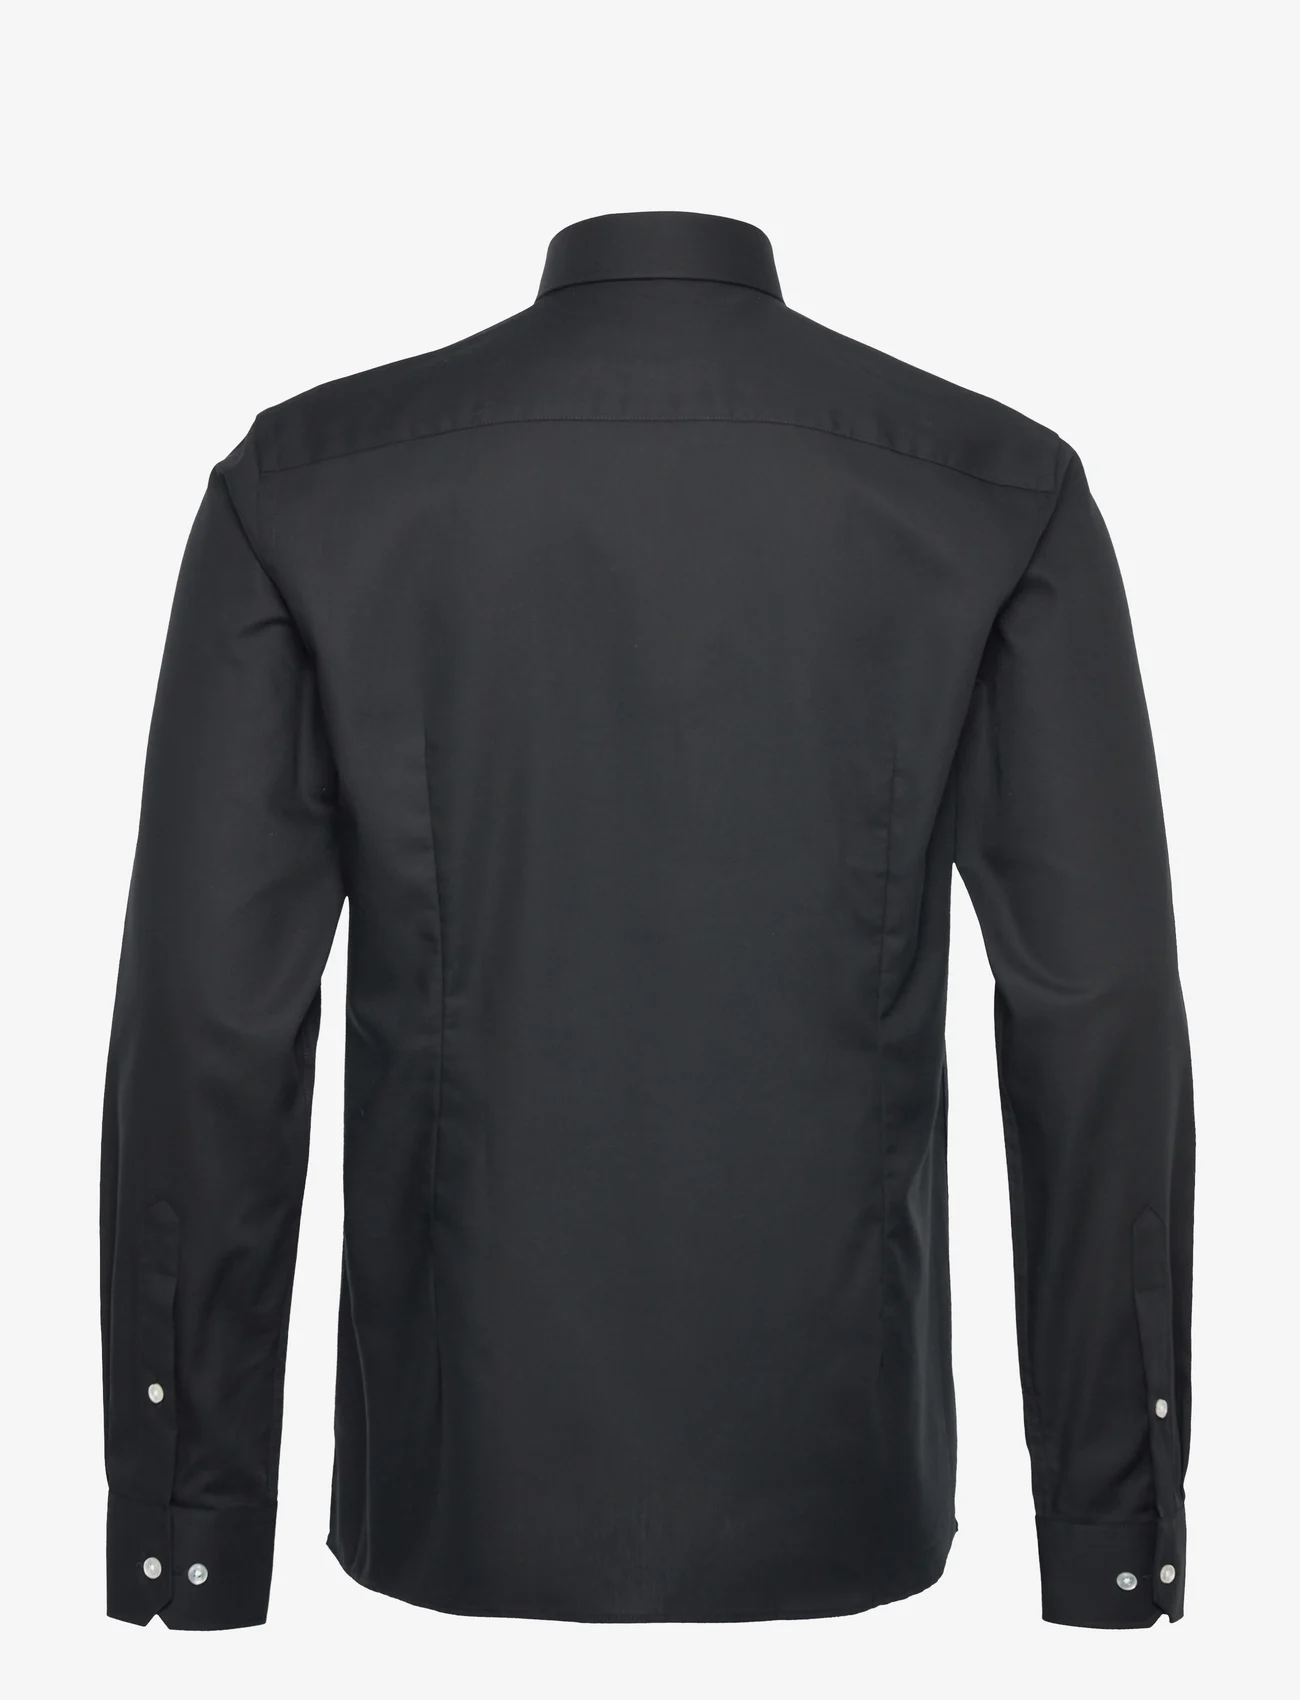 Bruun & Stengade - BS Halpert slim fit shirt - casual shirts - 2202-15043-200 - 1